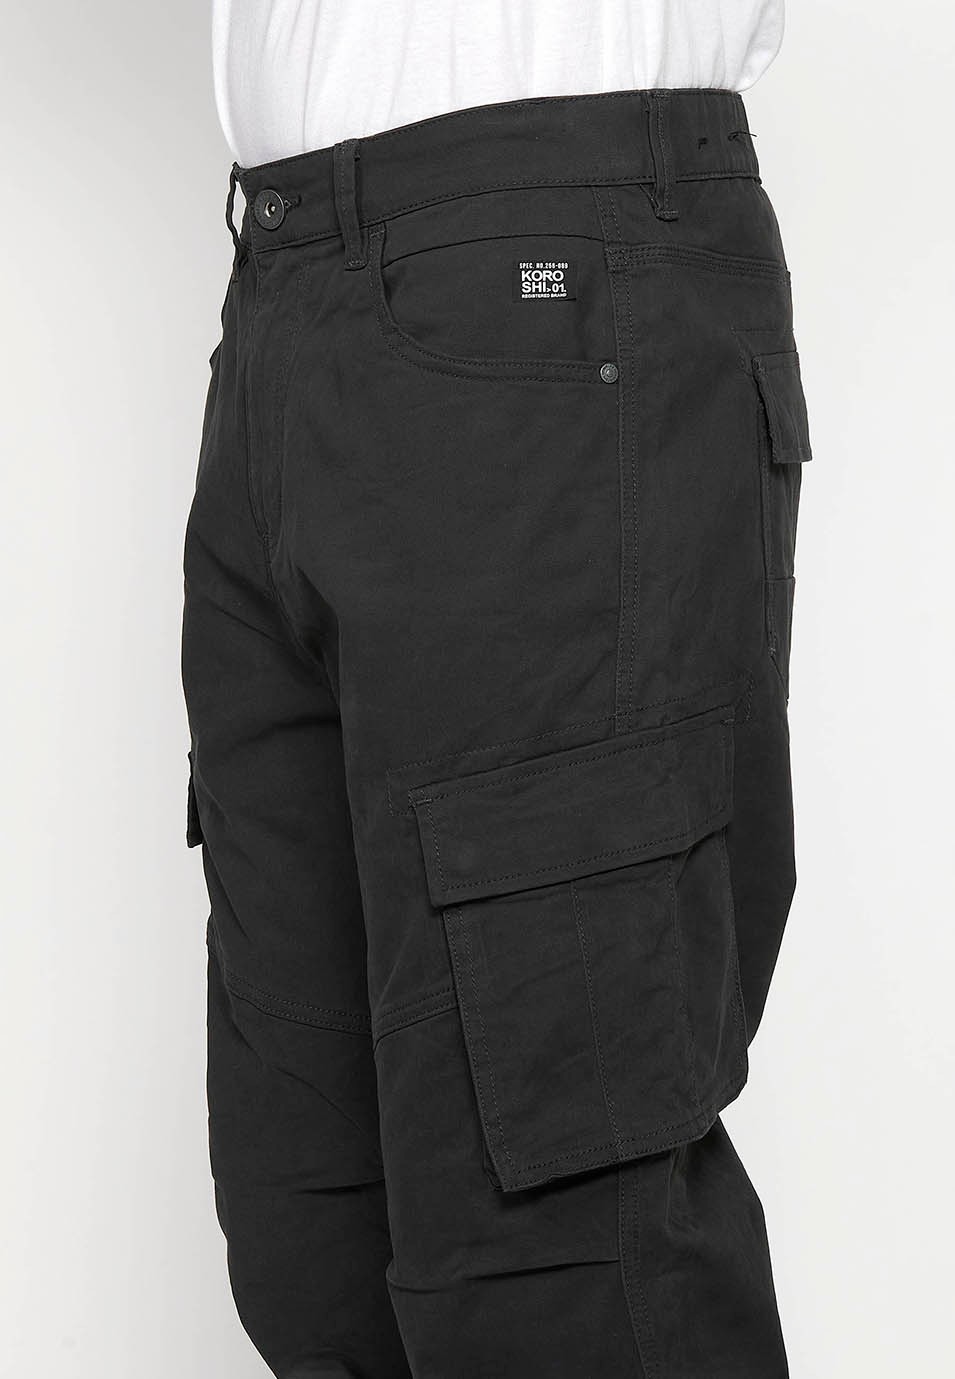 Pantalons llarg càrrec amb Tancament davanter amb cremallera i botó amb Butxaques laterals amb solapa de Color Negre per a Home